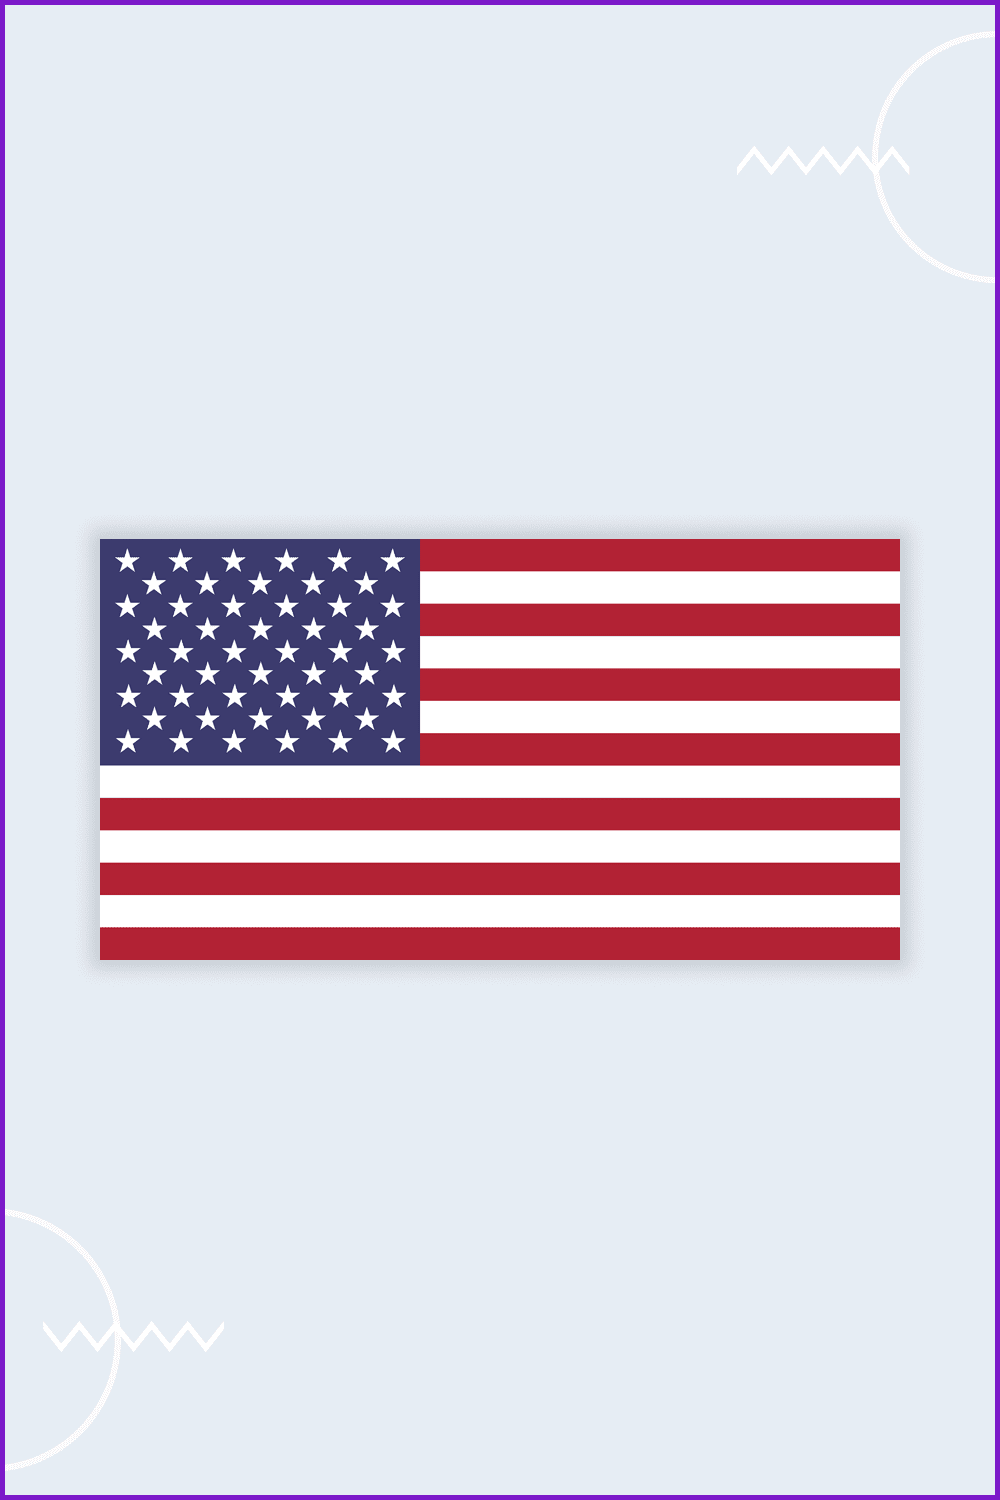 United States flag Original.